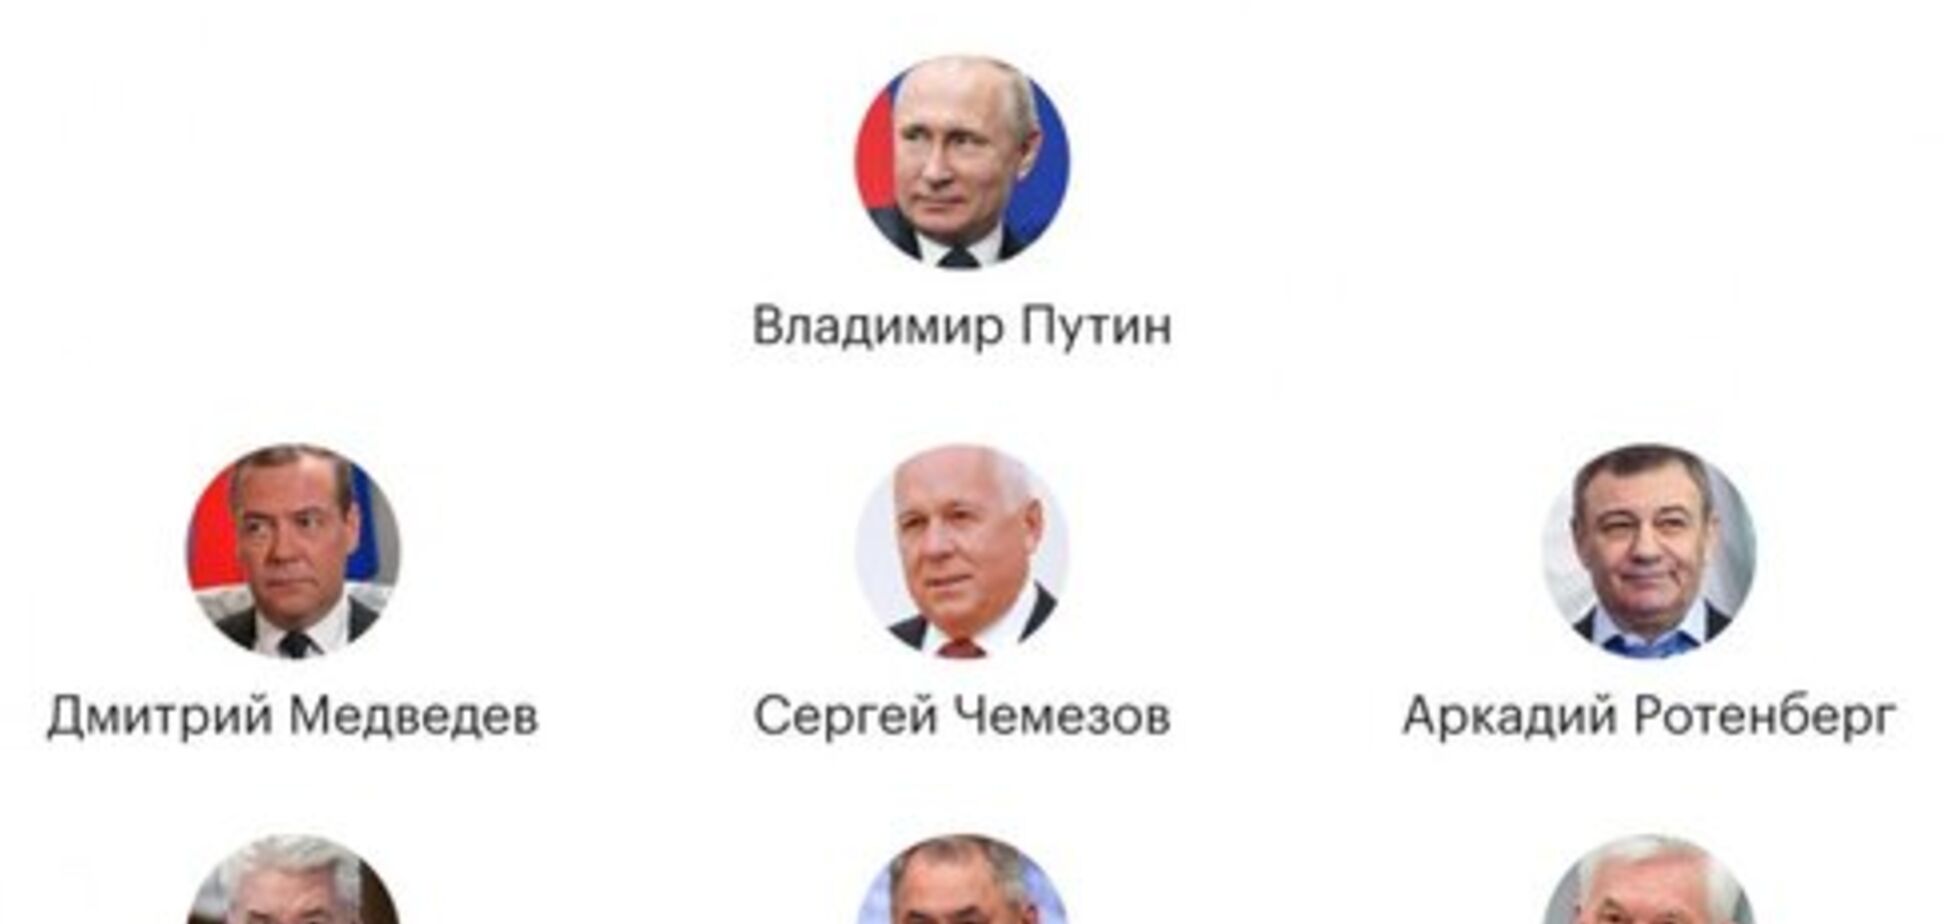 'Політбюро 2.0': у близькому колі Путіна відбулися суттєві зміни